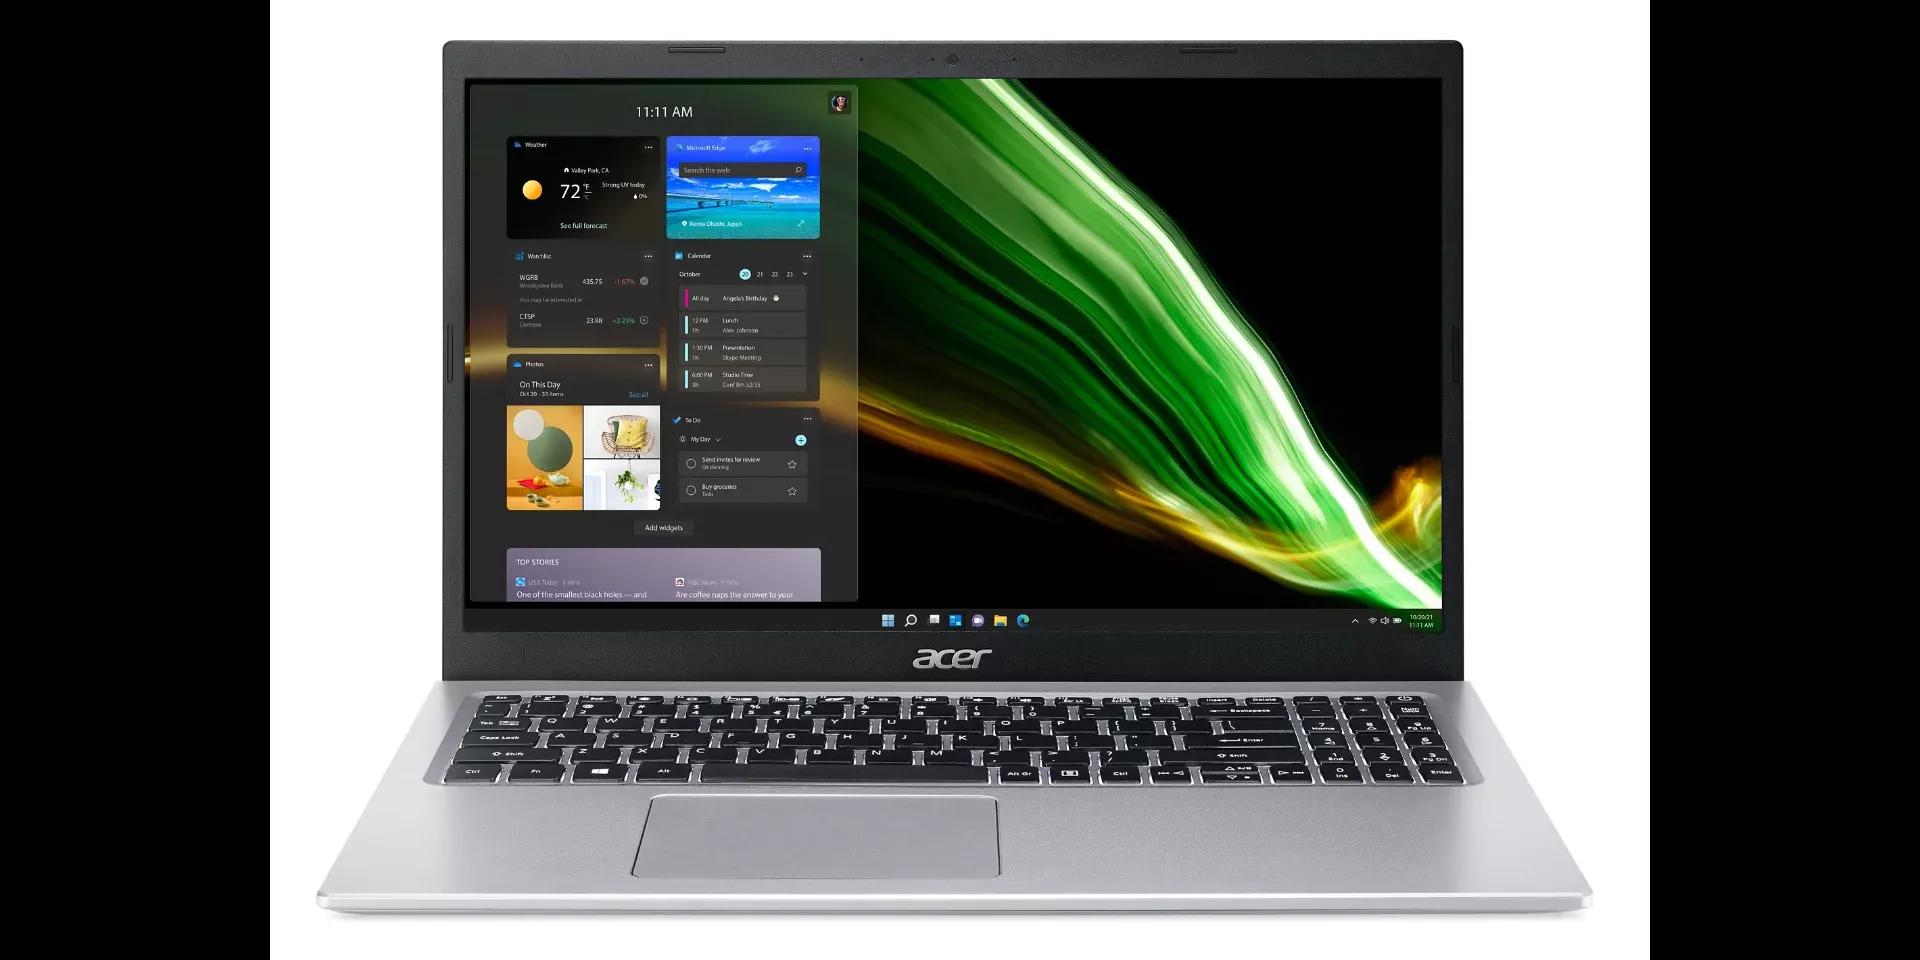 Acer Aspire 5 2021 i5 11th Gen | 4GB RAM | 1TB HDD | 15.6" HD Display